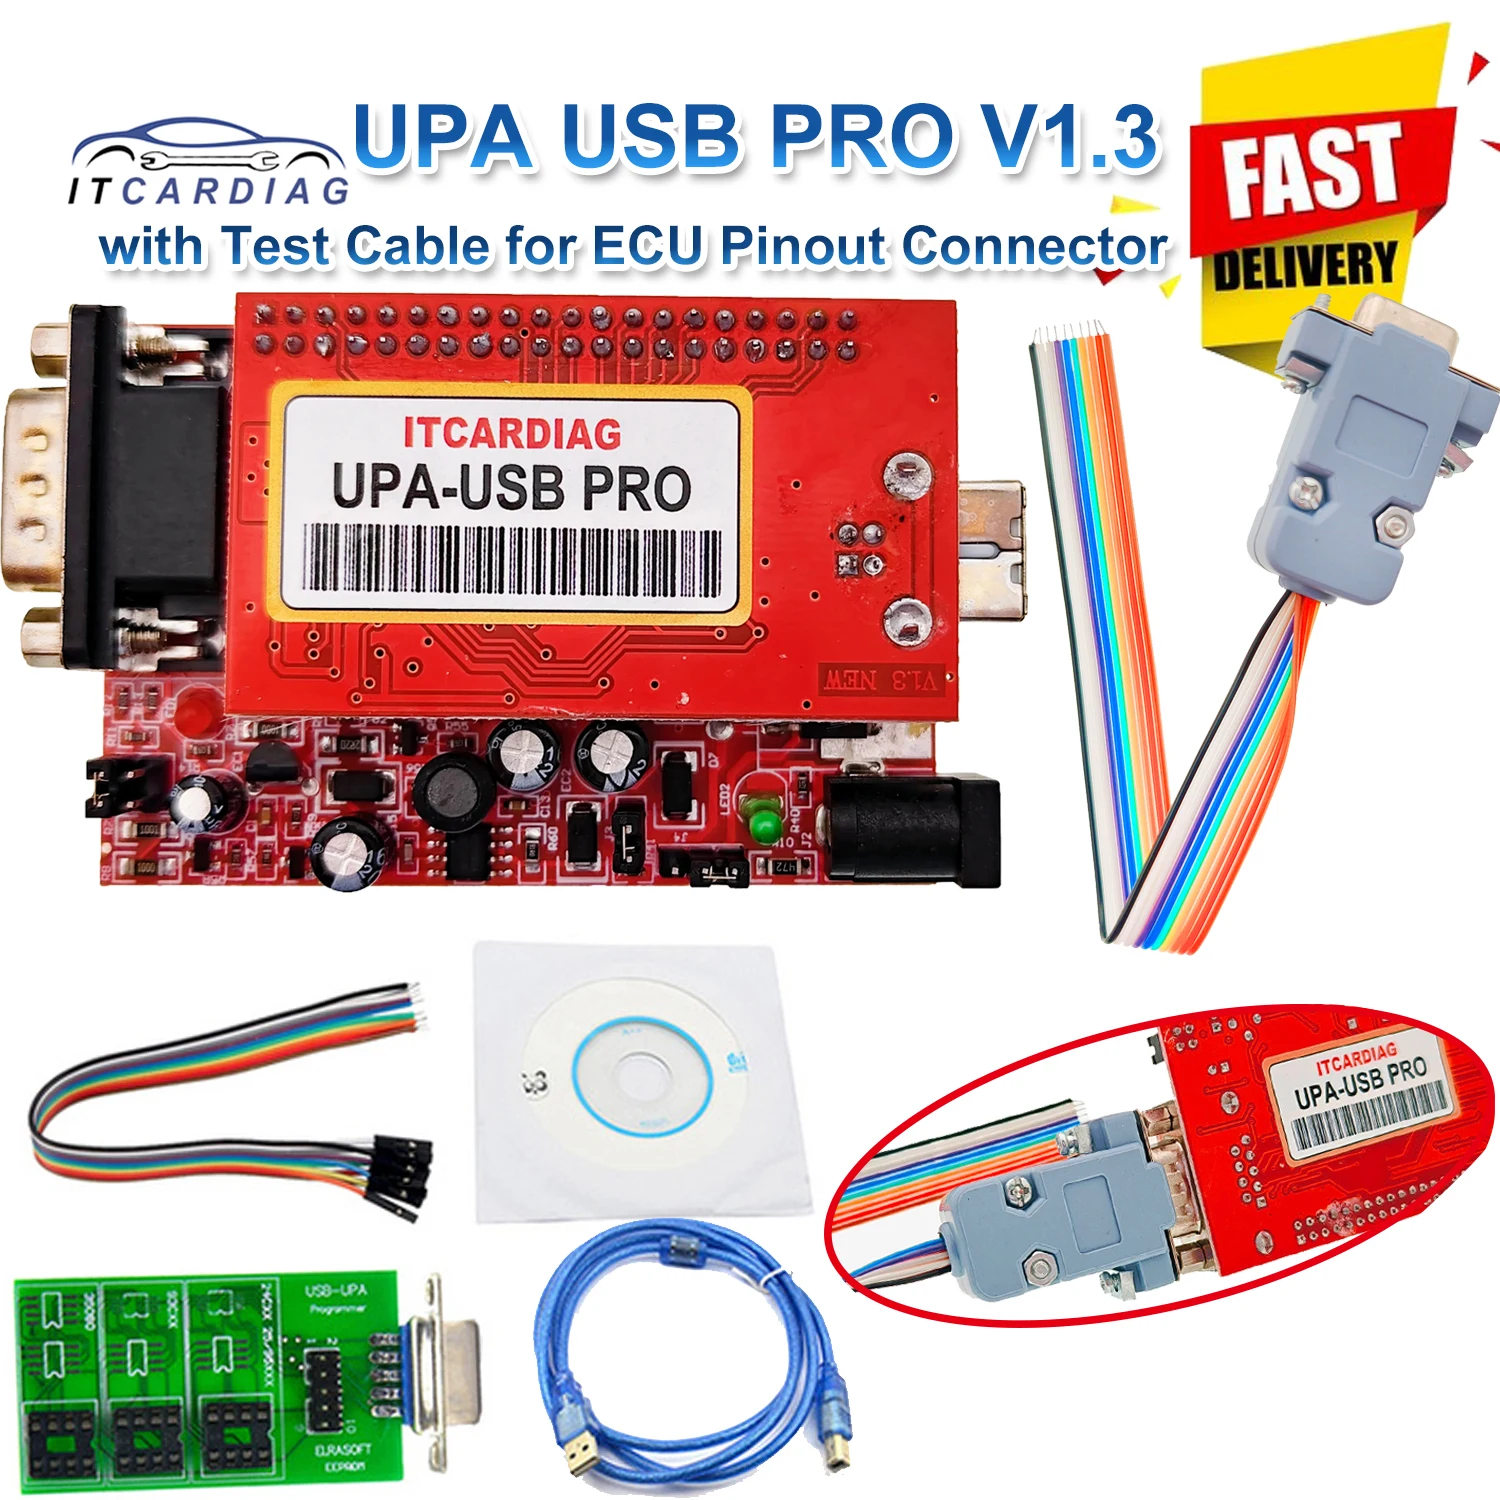 

Программатор UPA USB PRO V1.3 SN:050D5A5B ECU с полным шрифтом 350 Мб